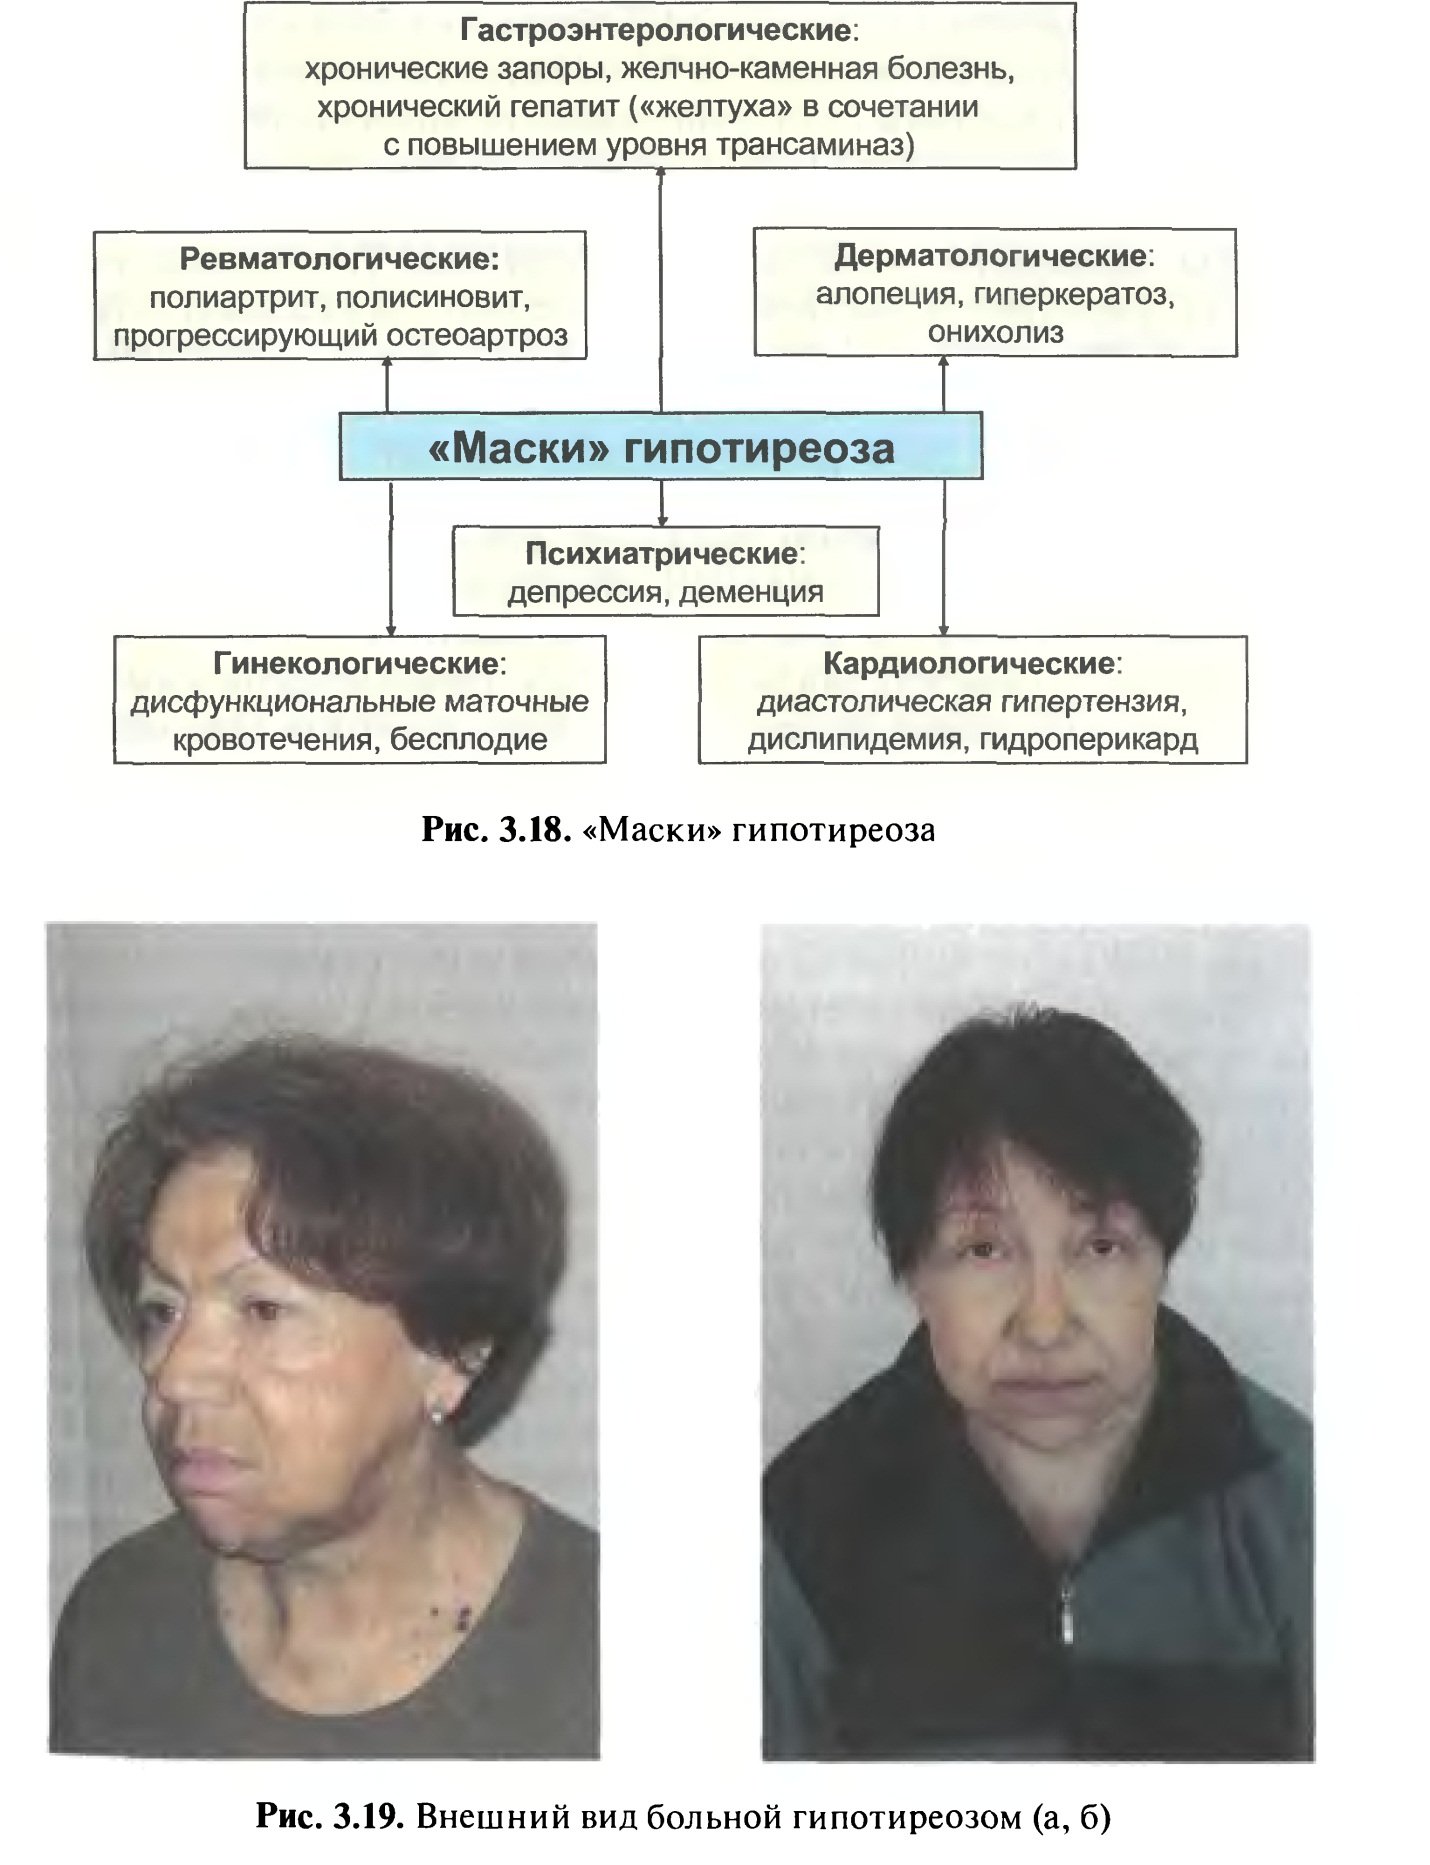 Клинические проявления гипотиреоза. Лицо женщины с гипотиреозом. Лицо пациента с гипотиреозом.